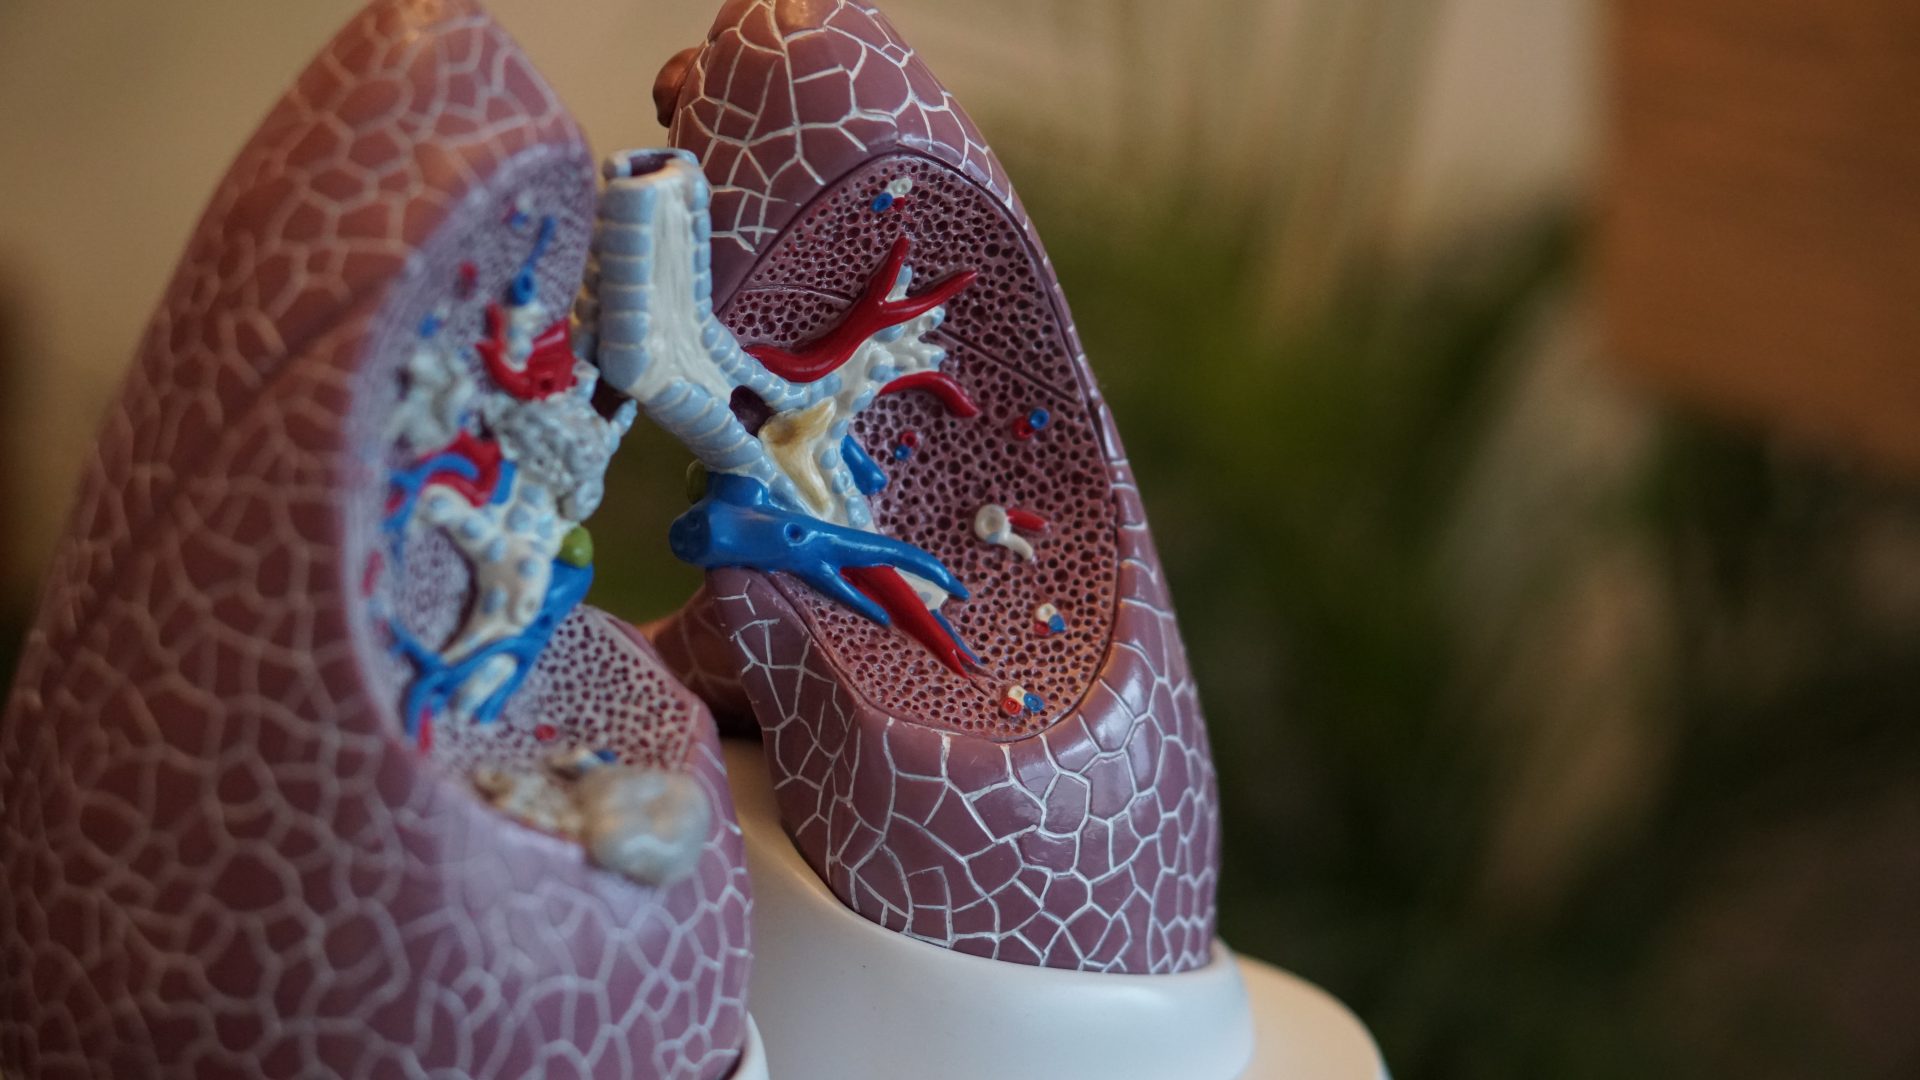 COPD ist eine Lungenkrankheit die vor allem durch das Rauchen begünstigt wird. Bildquelle: © Fabian Moller / Unsplash.com